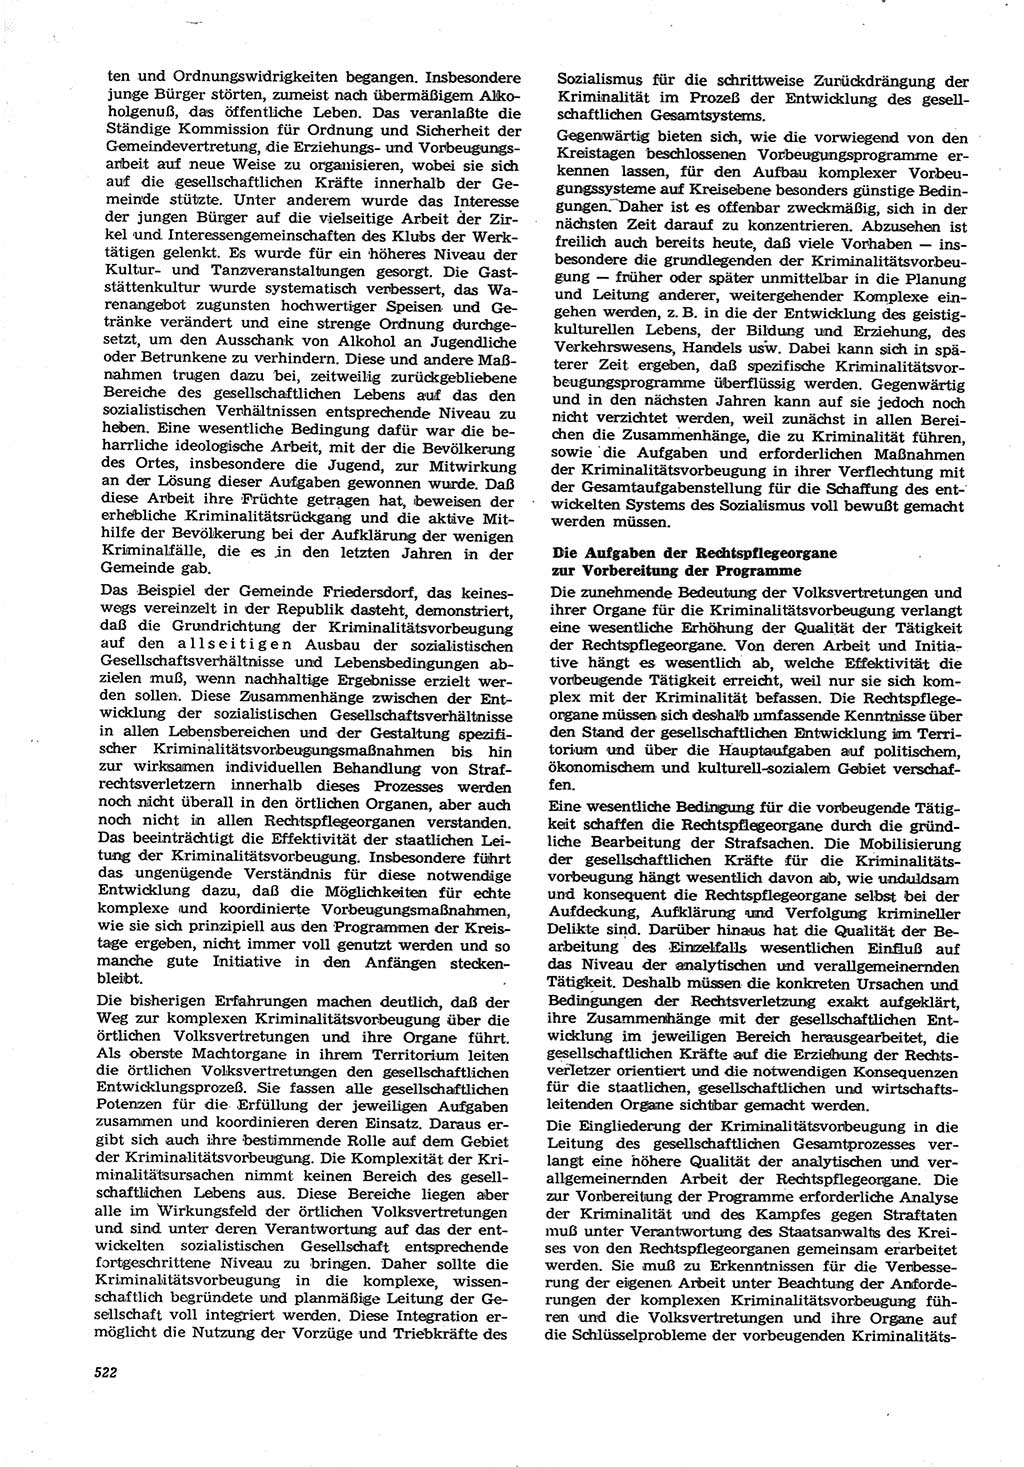 Neue Justiz (NJ), Zeitschrift für Recht und Rechtswissenschaft [Deutsche Demokratische Republik (DDR)], 21. Jahrgang 1967, Seite 522 (NJ DDR 1967, S. 522)